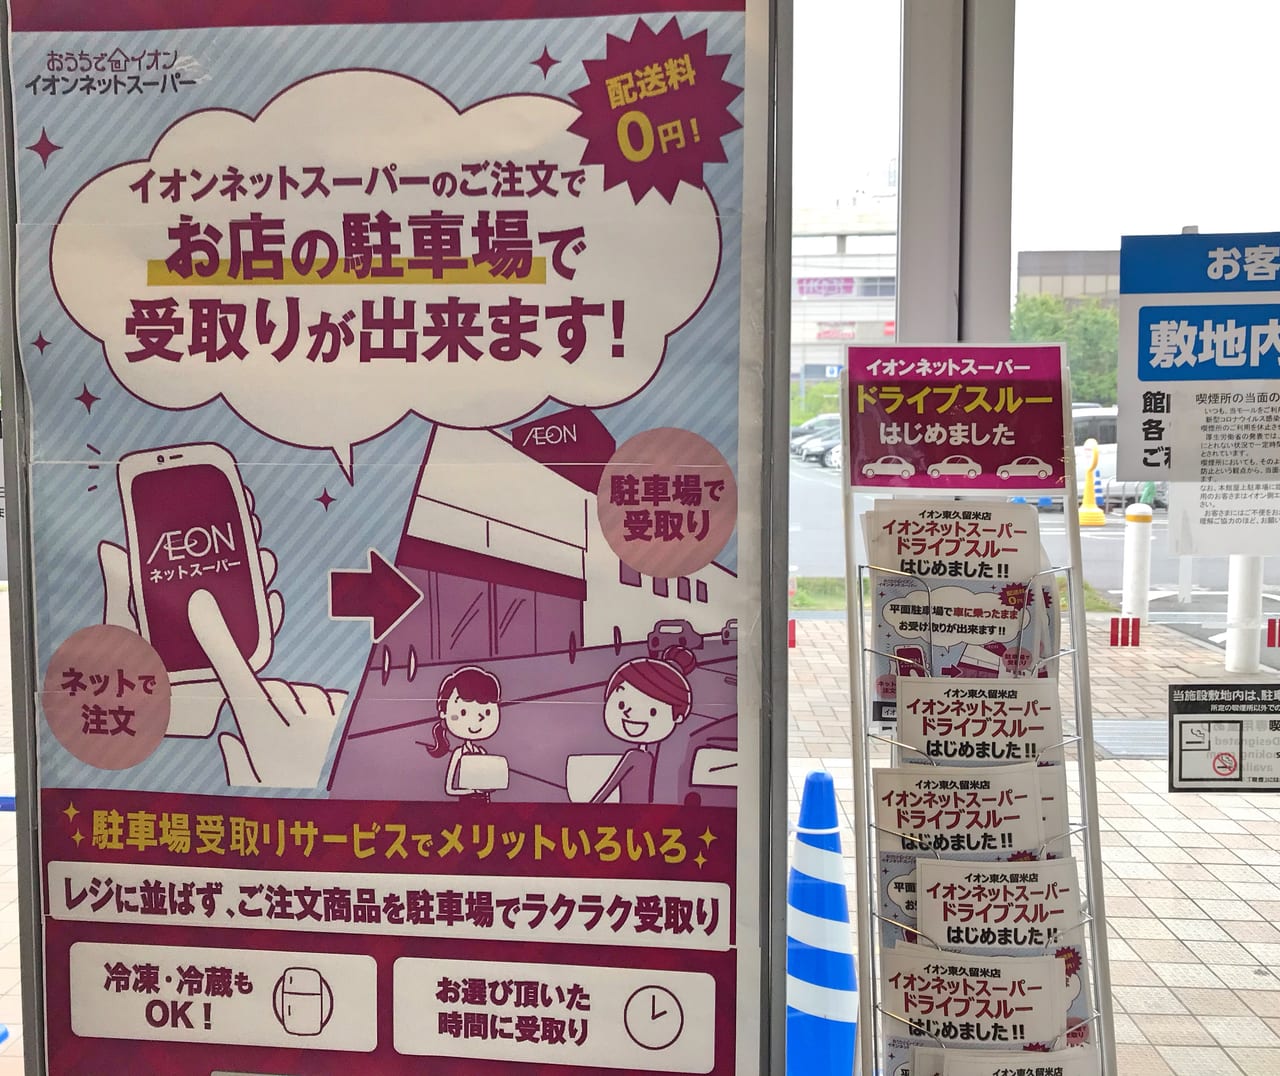 岡山 イオン ネット スーパー ネットスーパーのおすすめ教えてください。岡山市東区に住んでいます。調べたところ、イオン、…